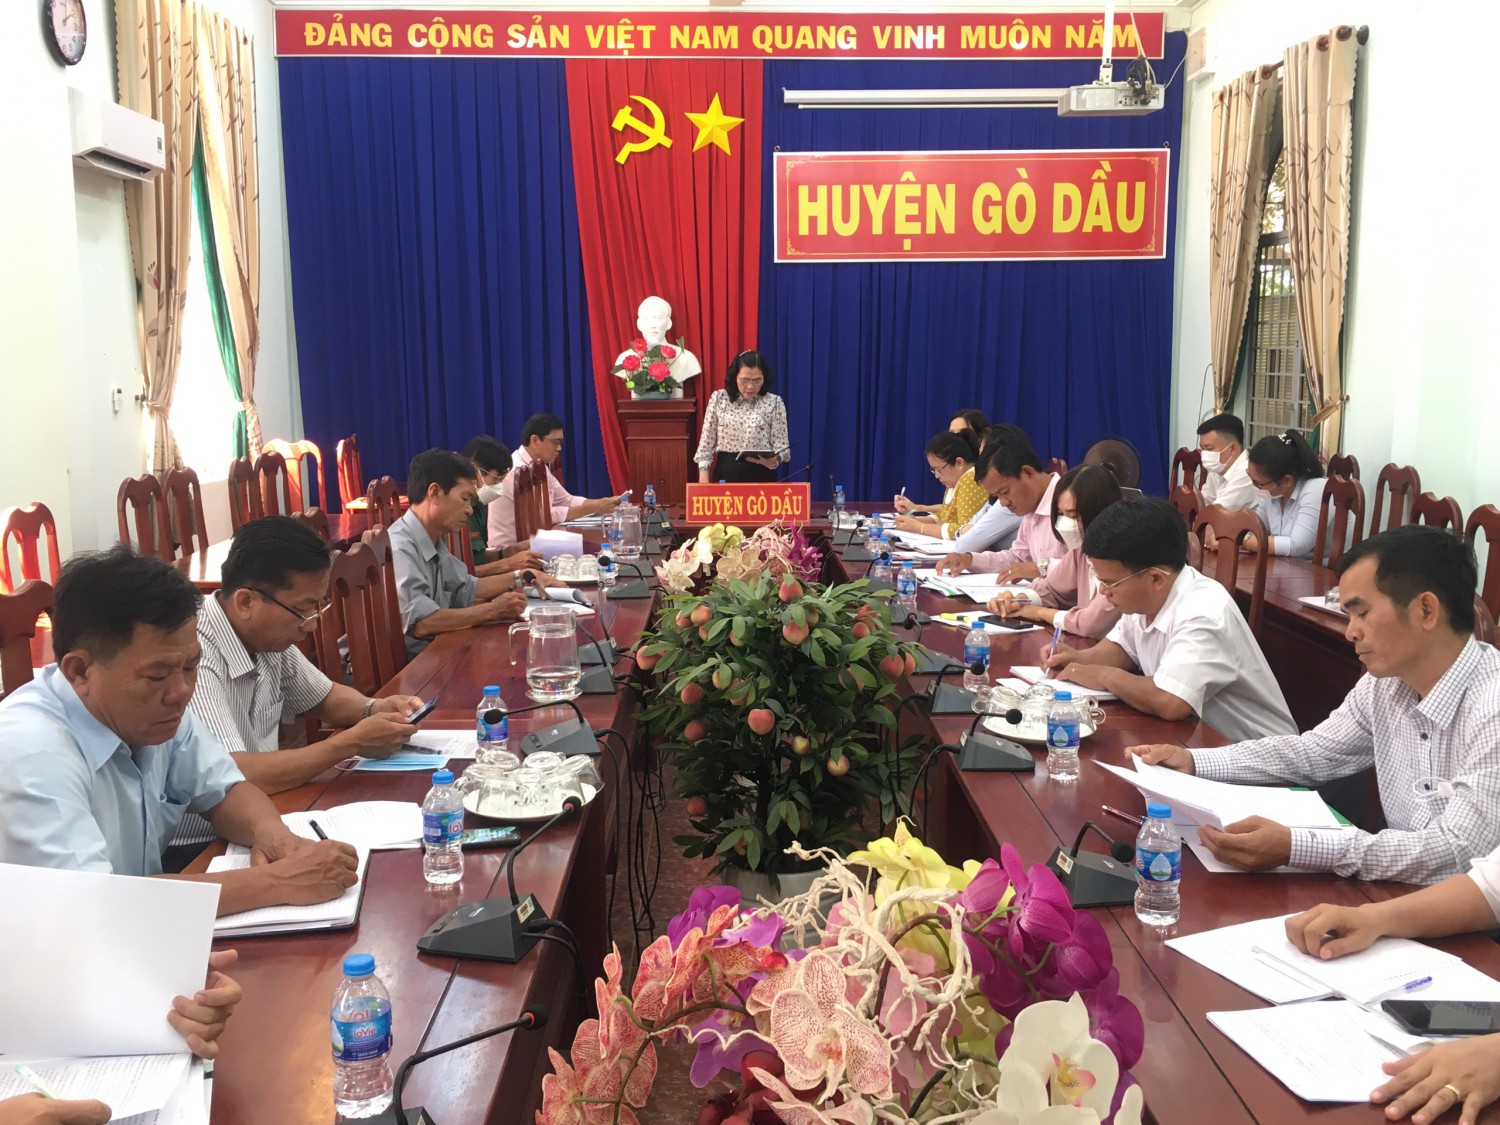 Ngân hàng Chính sách xã hội huyện Gò Dầu giải ngân hơn 57,7 tỷ đồng cho hơn 2.300 hộ vay trong 6 tháng đầu năm 2022